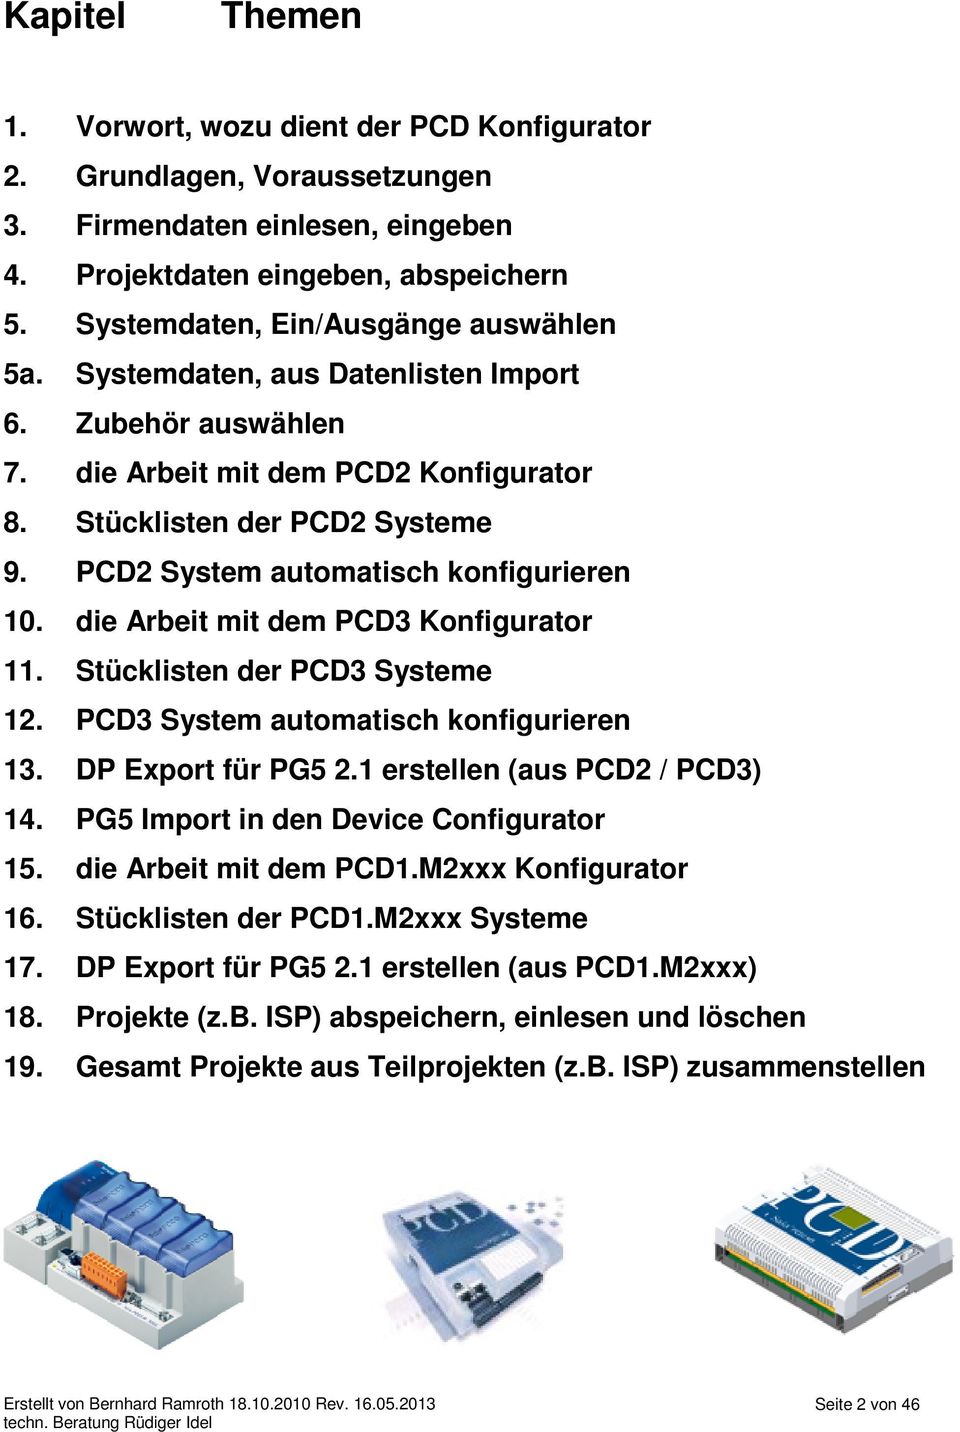 PCD2 System automatisch konfigurieren 10. die Arbeit mit dem PCD3 Konfigurator 11. Stücklisten der PCD3 Systeme 12. PCD3 System automatisch konfigurieren 13. DP Export für PG5 2.